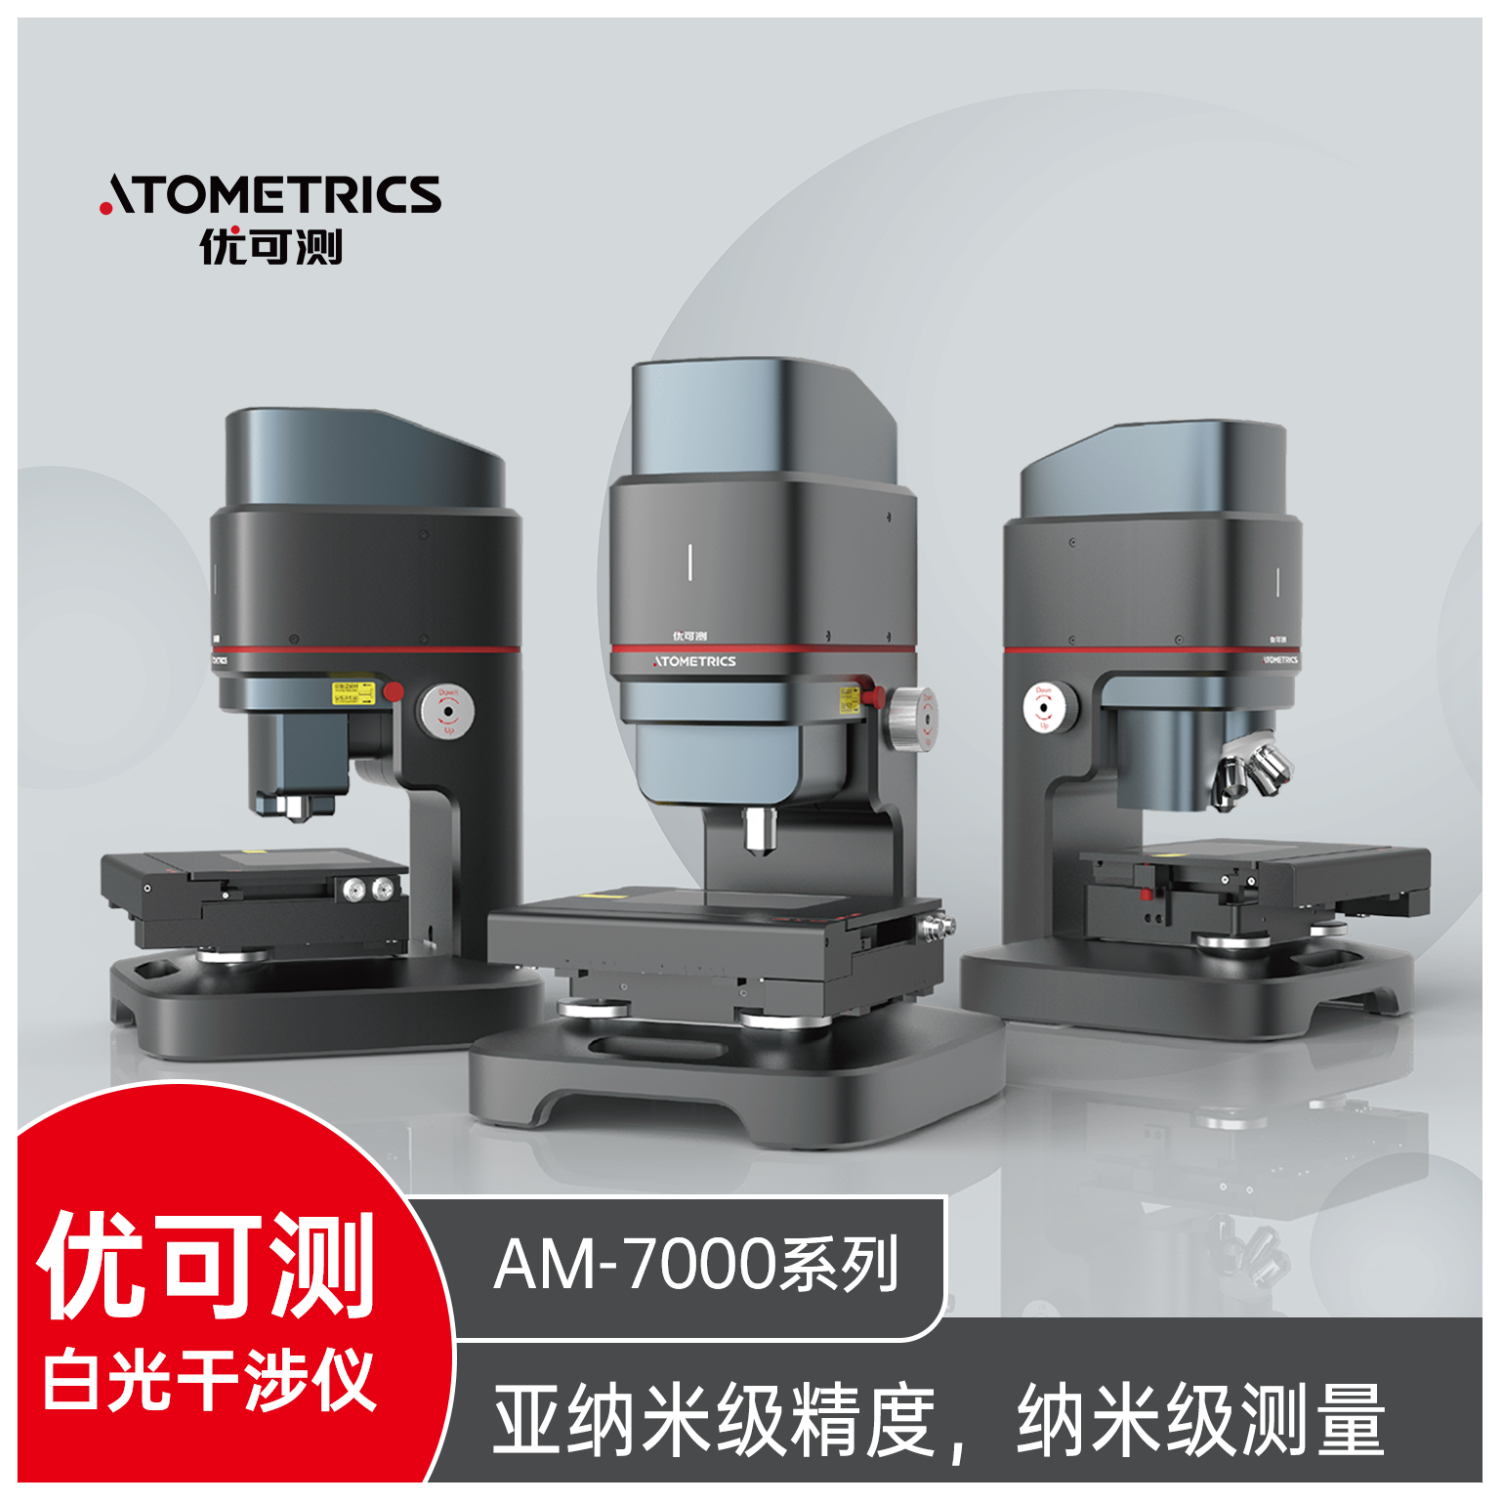 优可测Atometrics白光干涉仪AM-7000系列ER-230